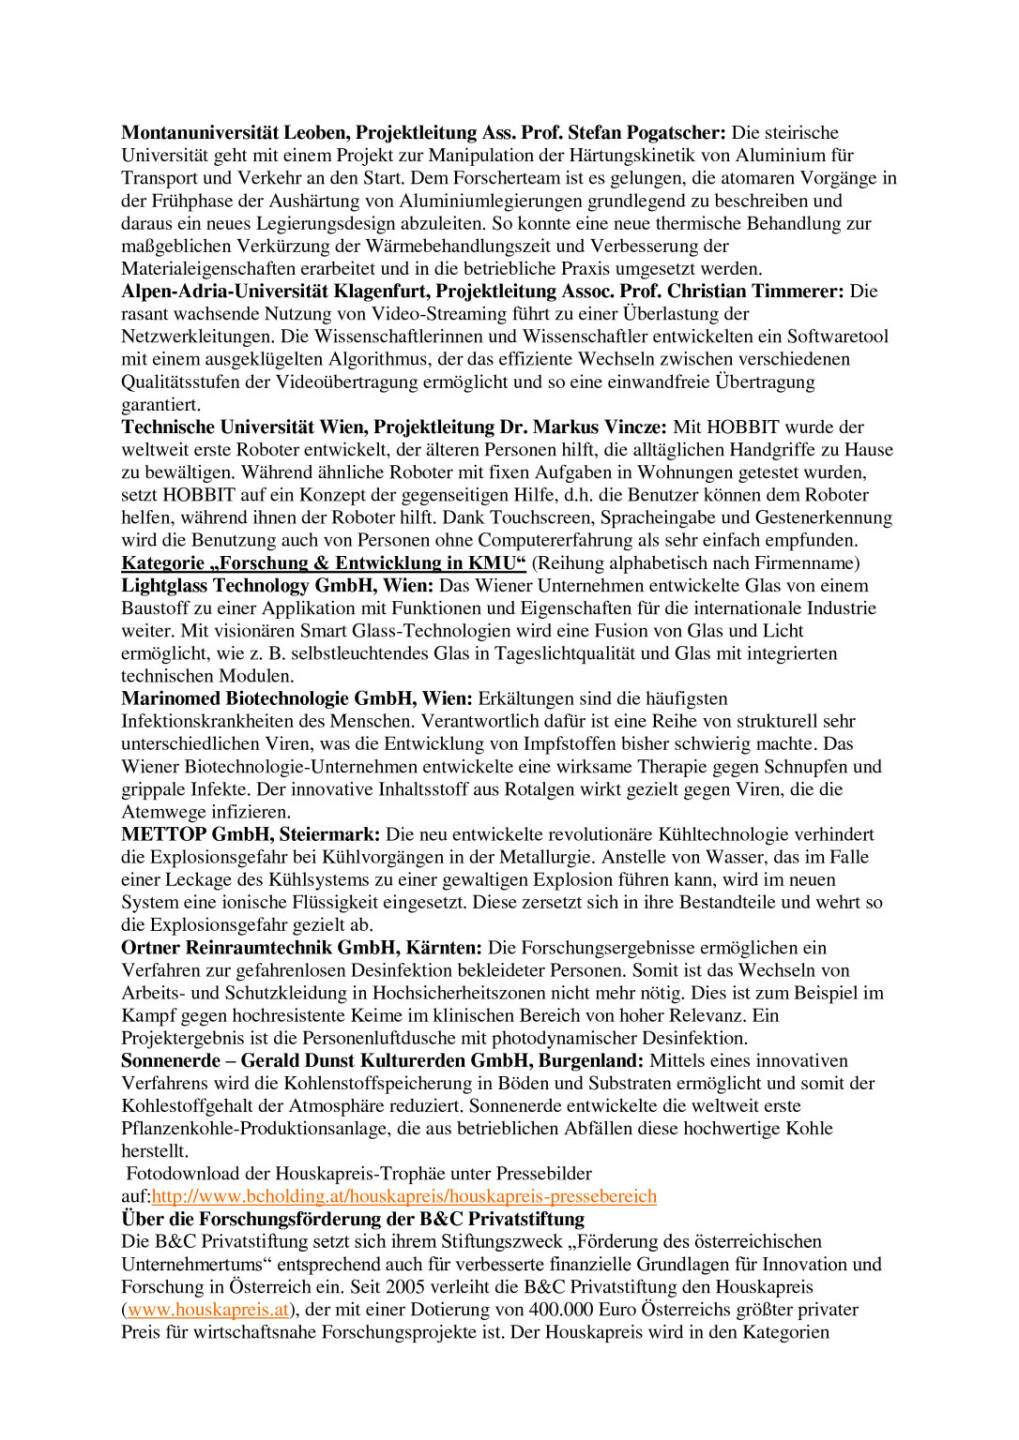 Houskapreis 2016: B&C Privatstiftung präsentiert Nominierte für Österreichs „Forschungs-Oscar“, Seite 2/3, komplettes Dokument unter http://boerse-social.com/static/uploads/file_740_houskapreis_2016_bc_privatstiftung_prasentiert_nominierte_fur_osterreichs_forschungs-oscar.pdf